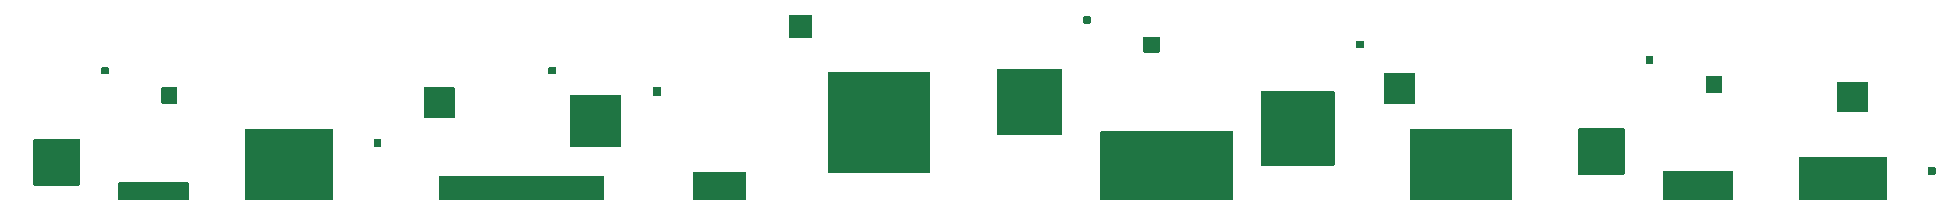 Grüne Quadrate für den Footerbereich der Webseite.